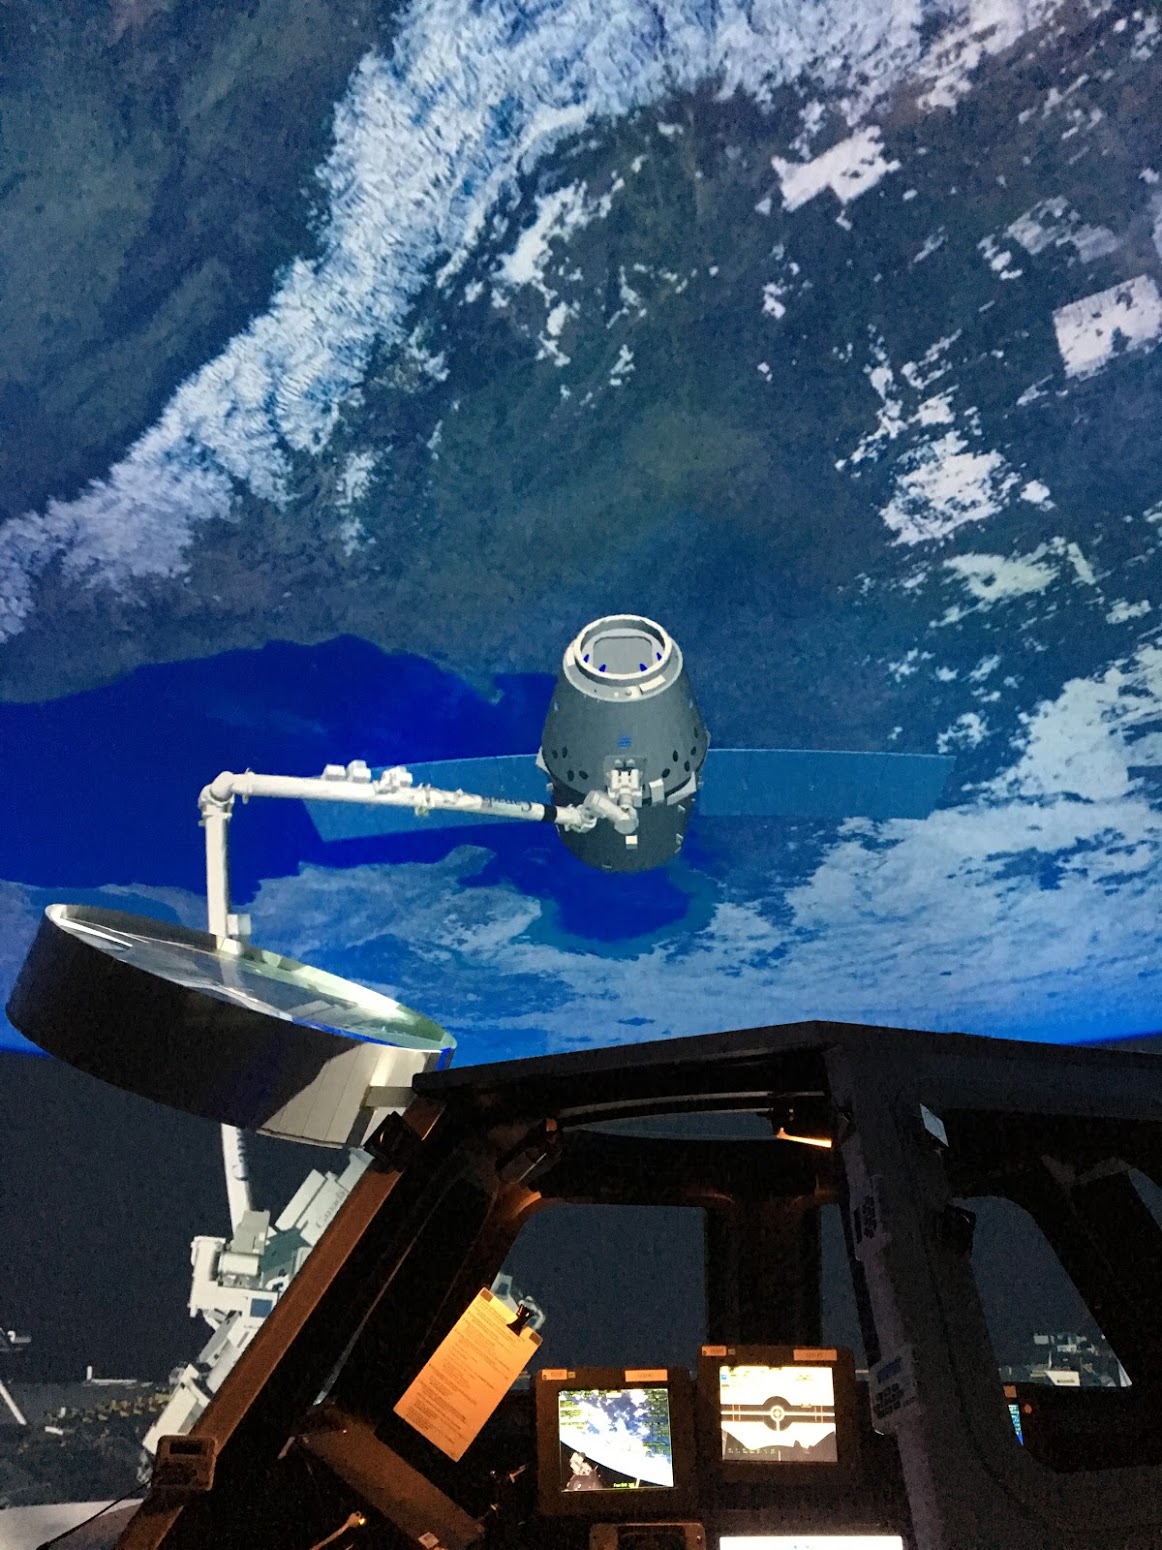 人在旅途 - 休斯顿NASA宇航局 - abcxyz123.com